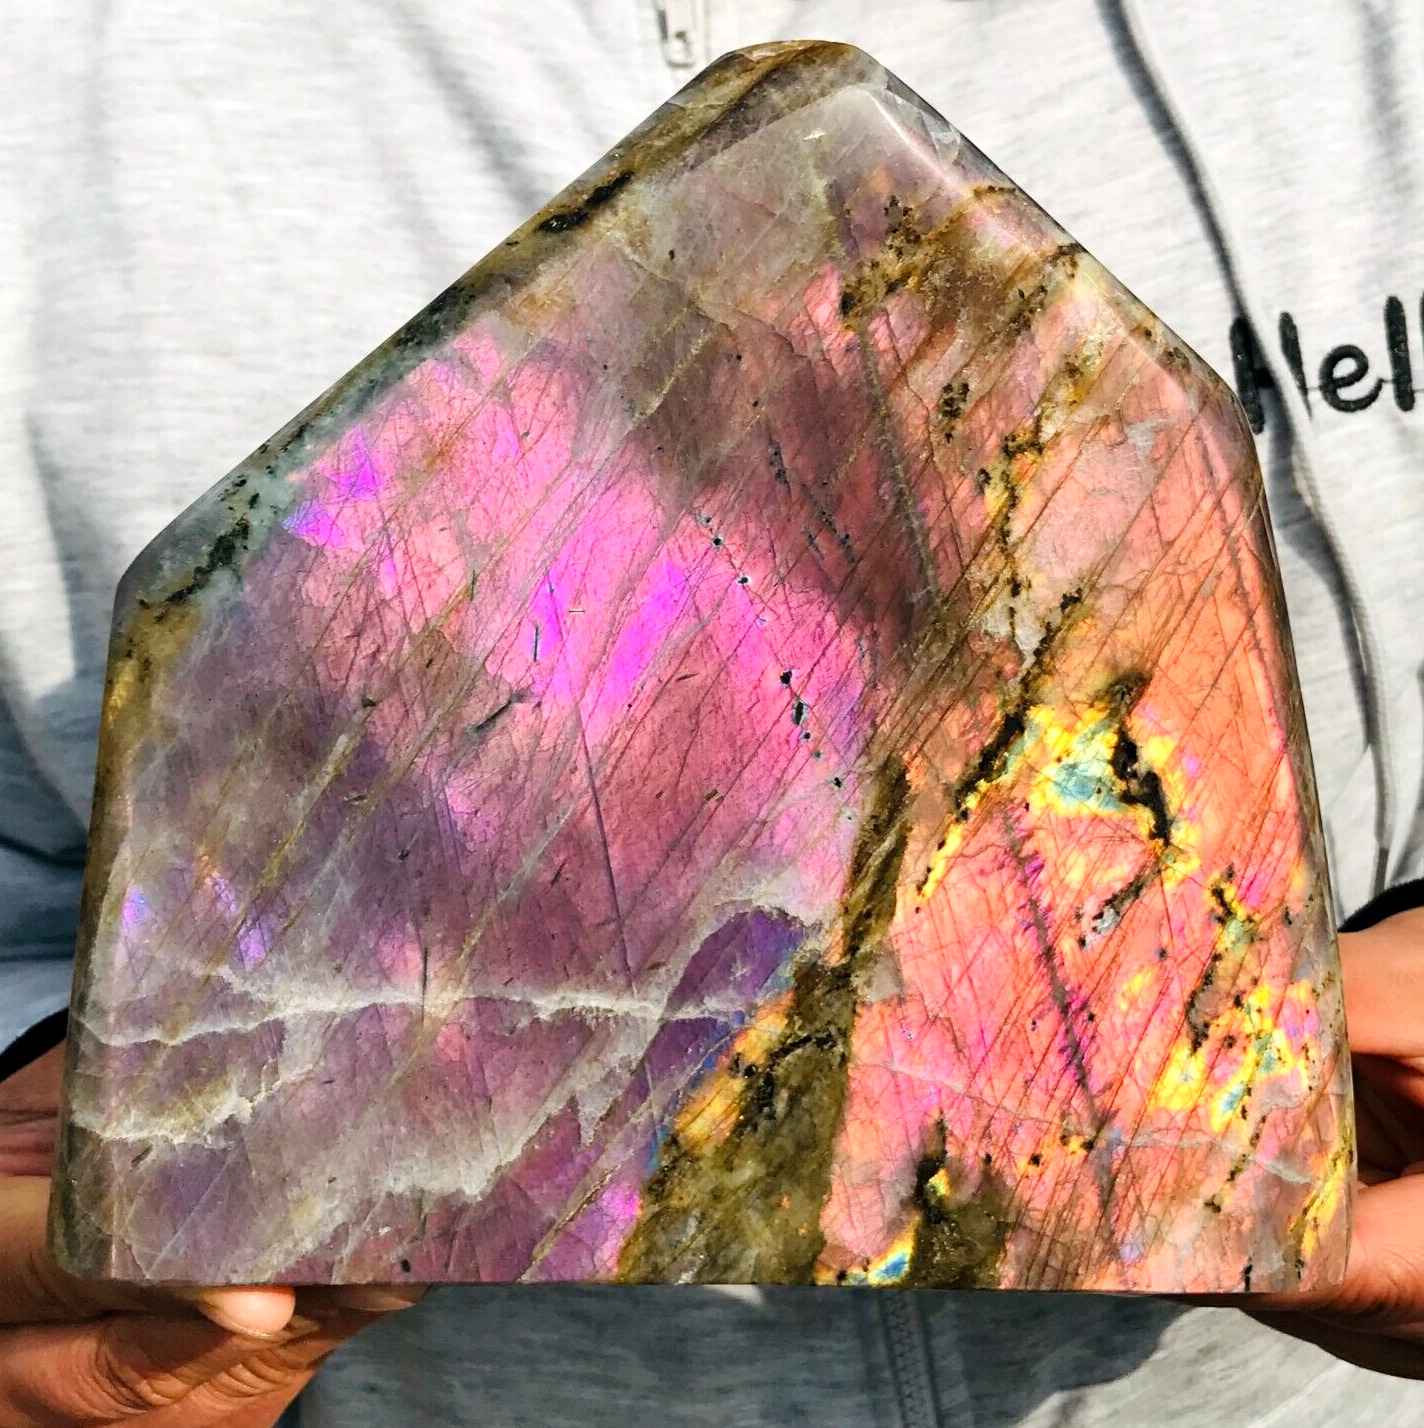 3670g Large Natural Purple Flash Labradorite Crystal Display Specimen Healing